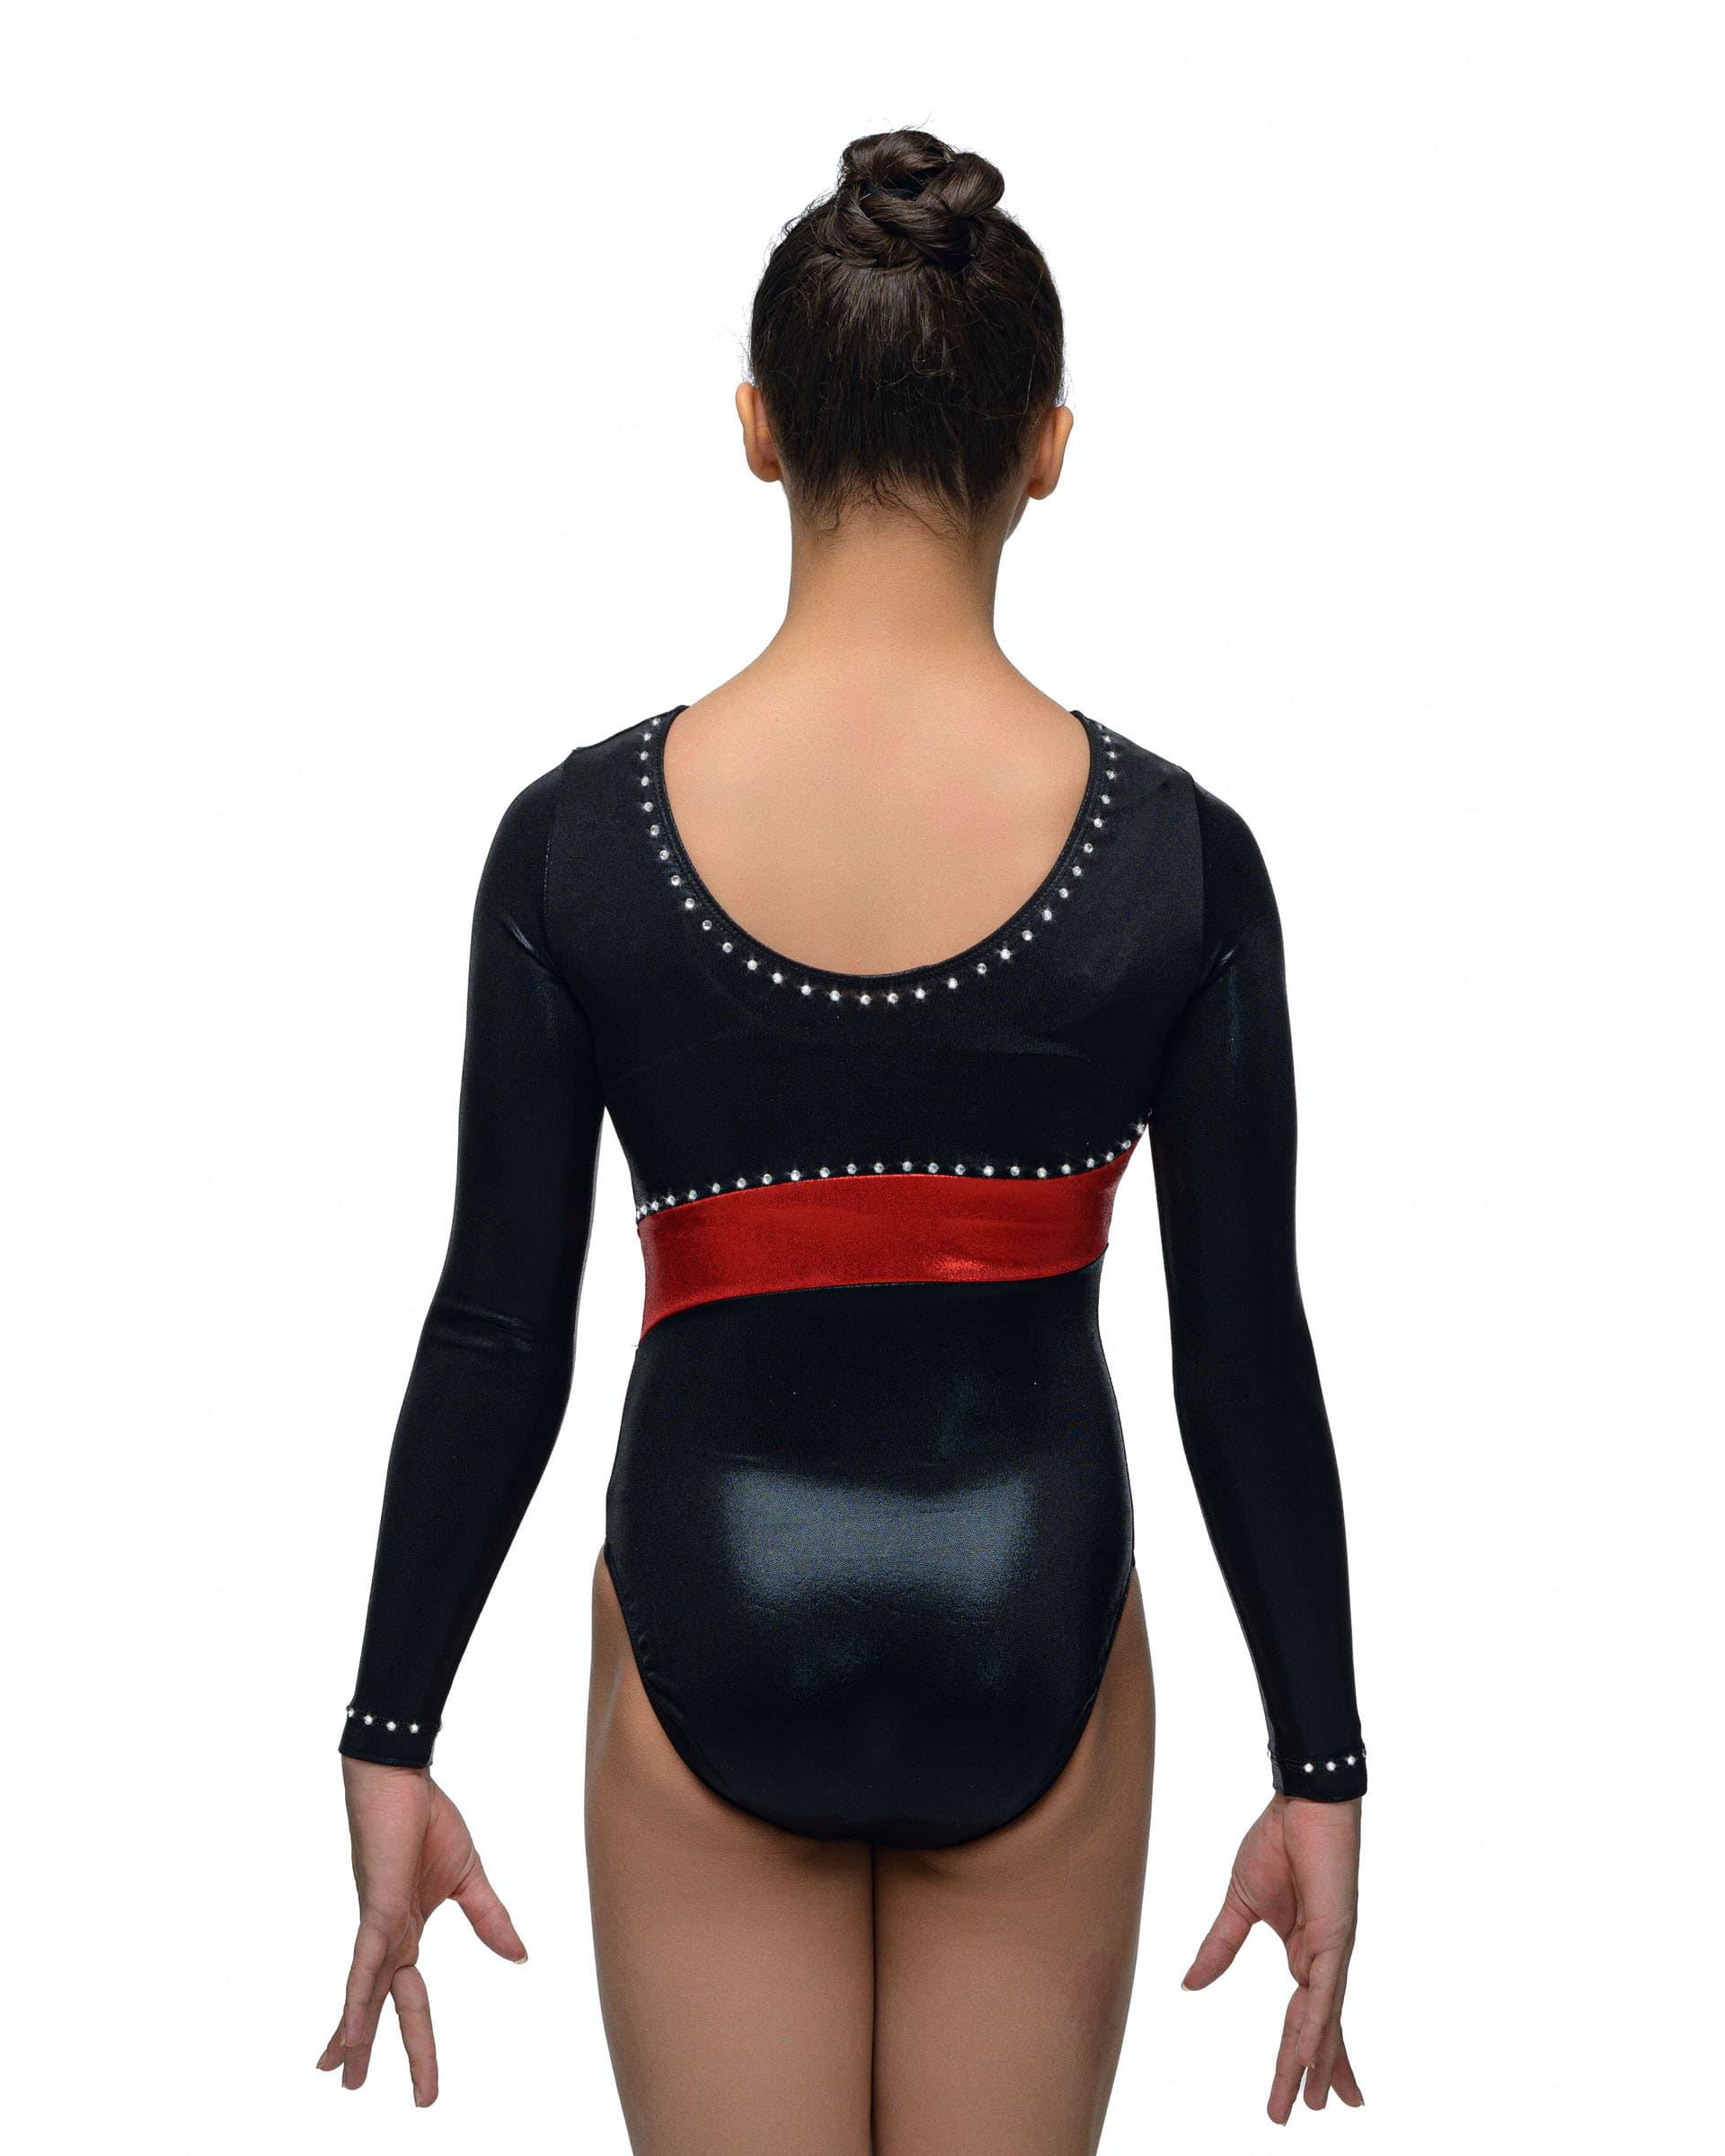 Купальник женский для спортивной гимнастики GK Elite 5374 красный с черным со стразами с рукавом